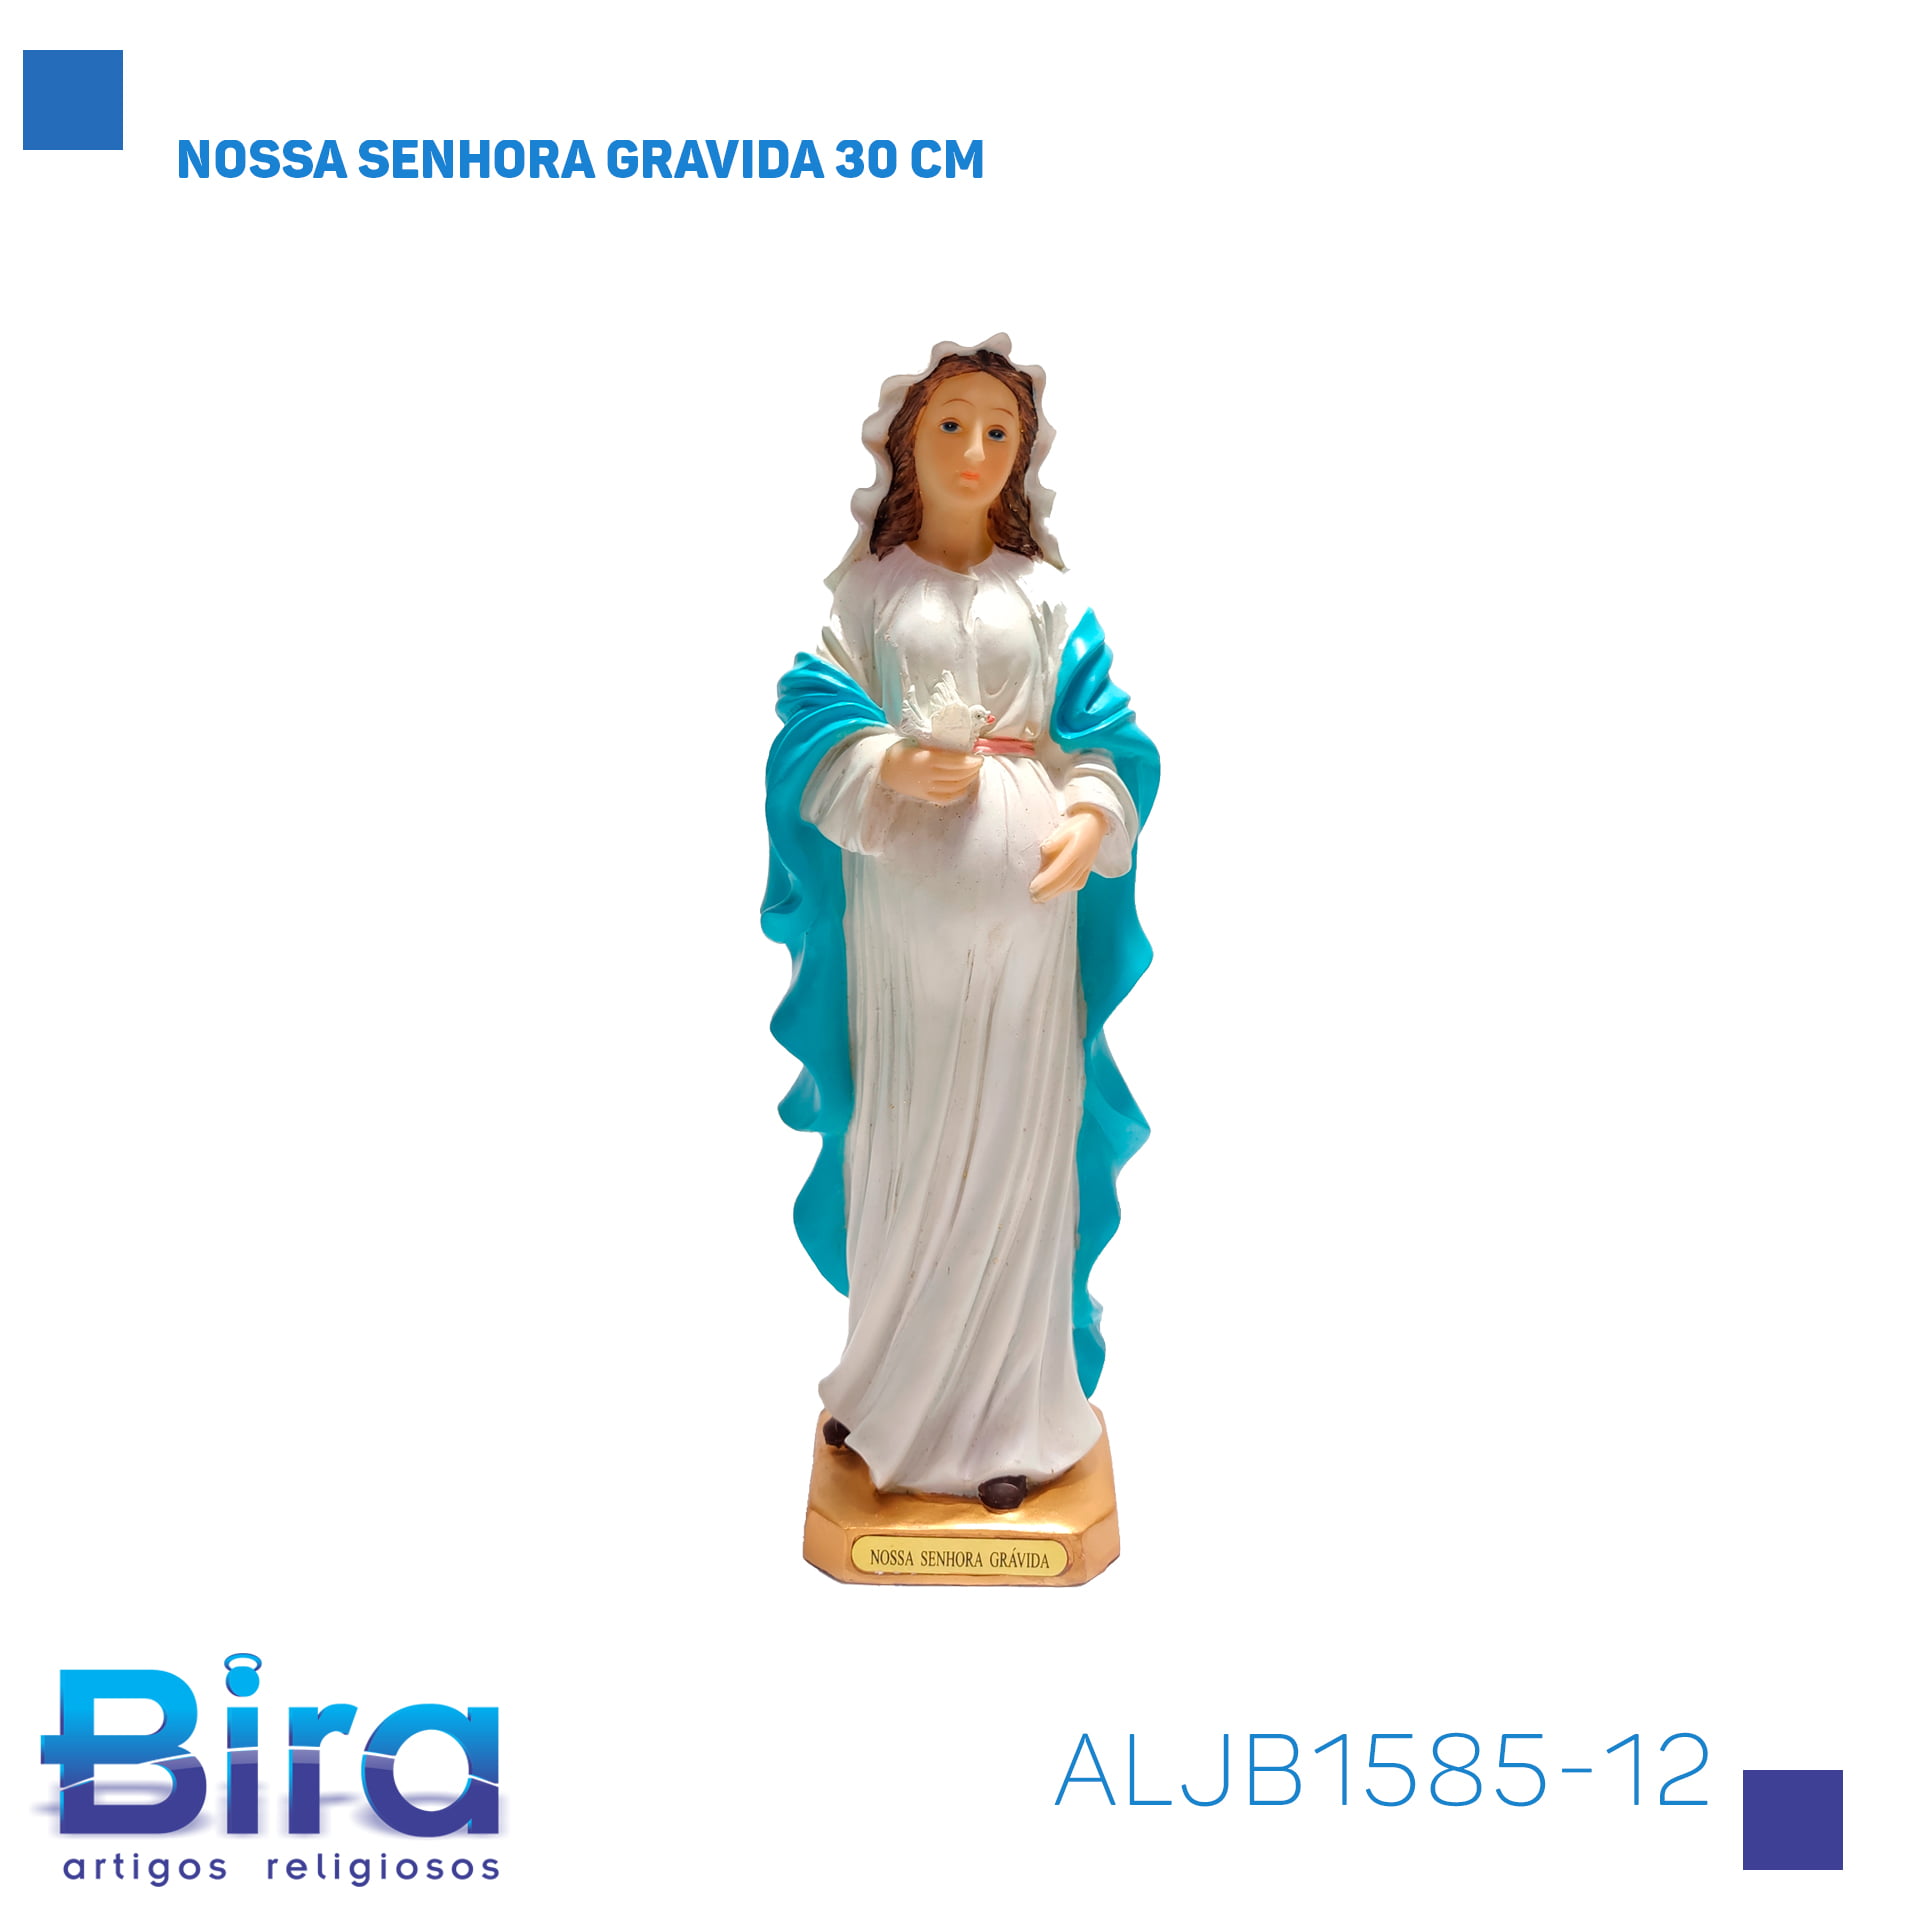 Bira Artigos Religiosos - NOSSA SENHORA GRAVIDA 30 CM - Cód. ALJB1585-12